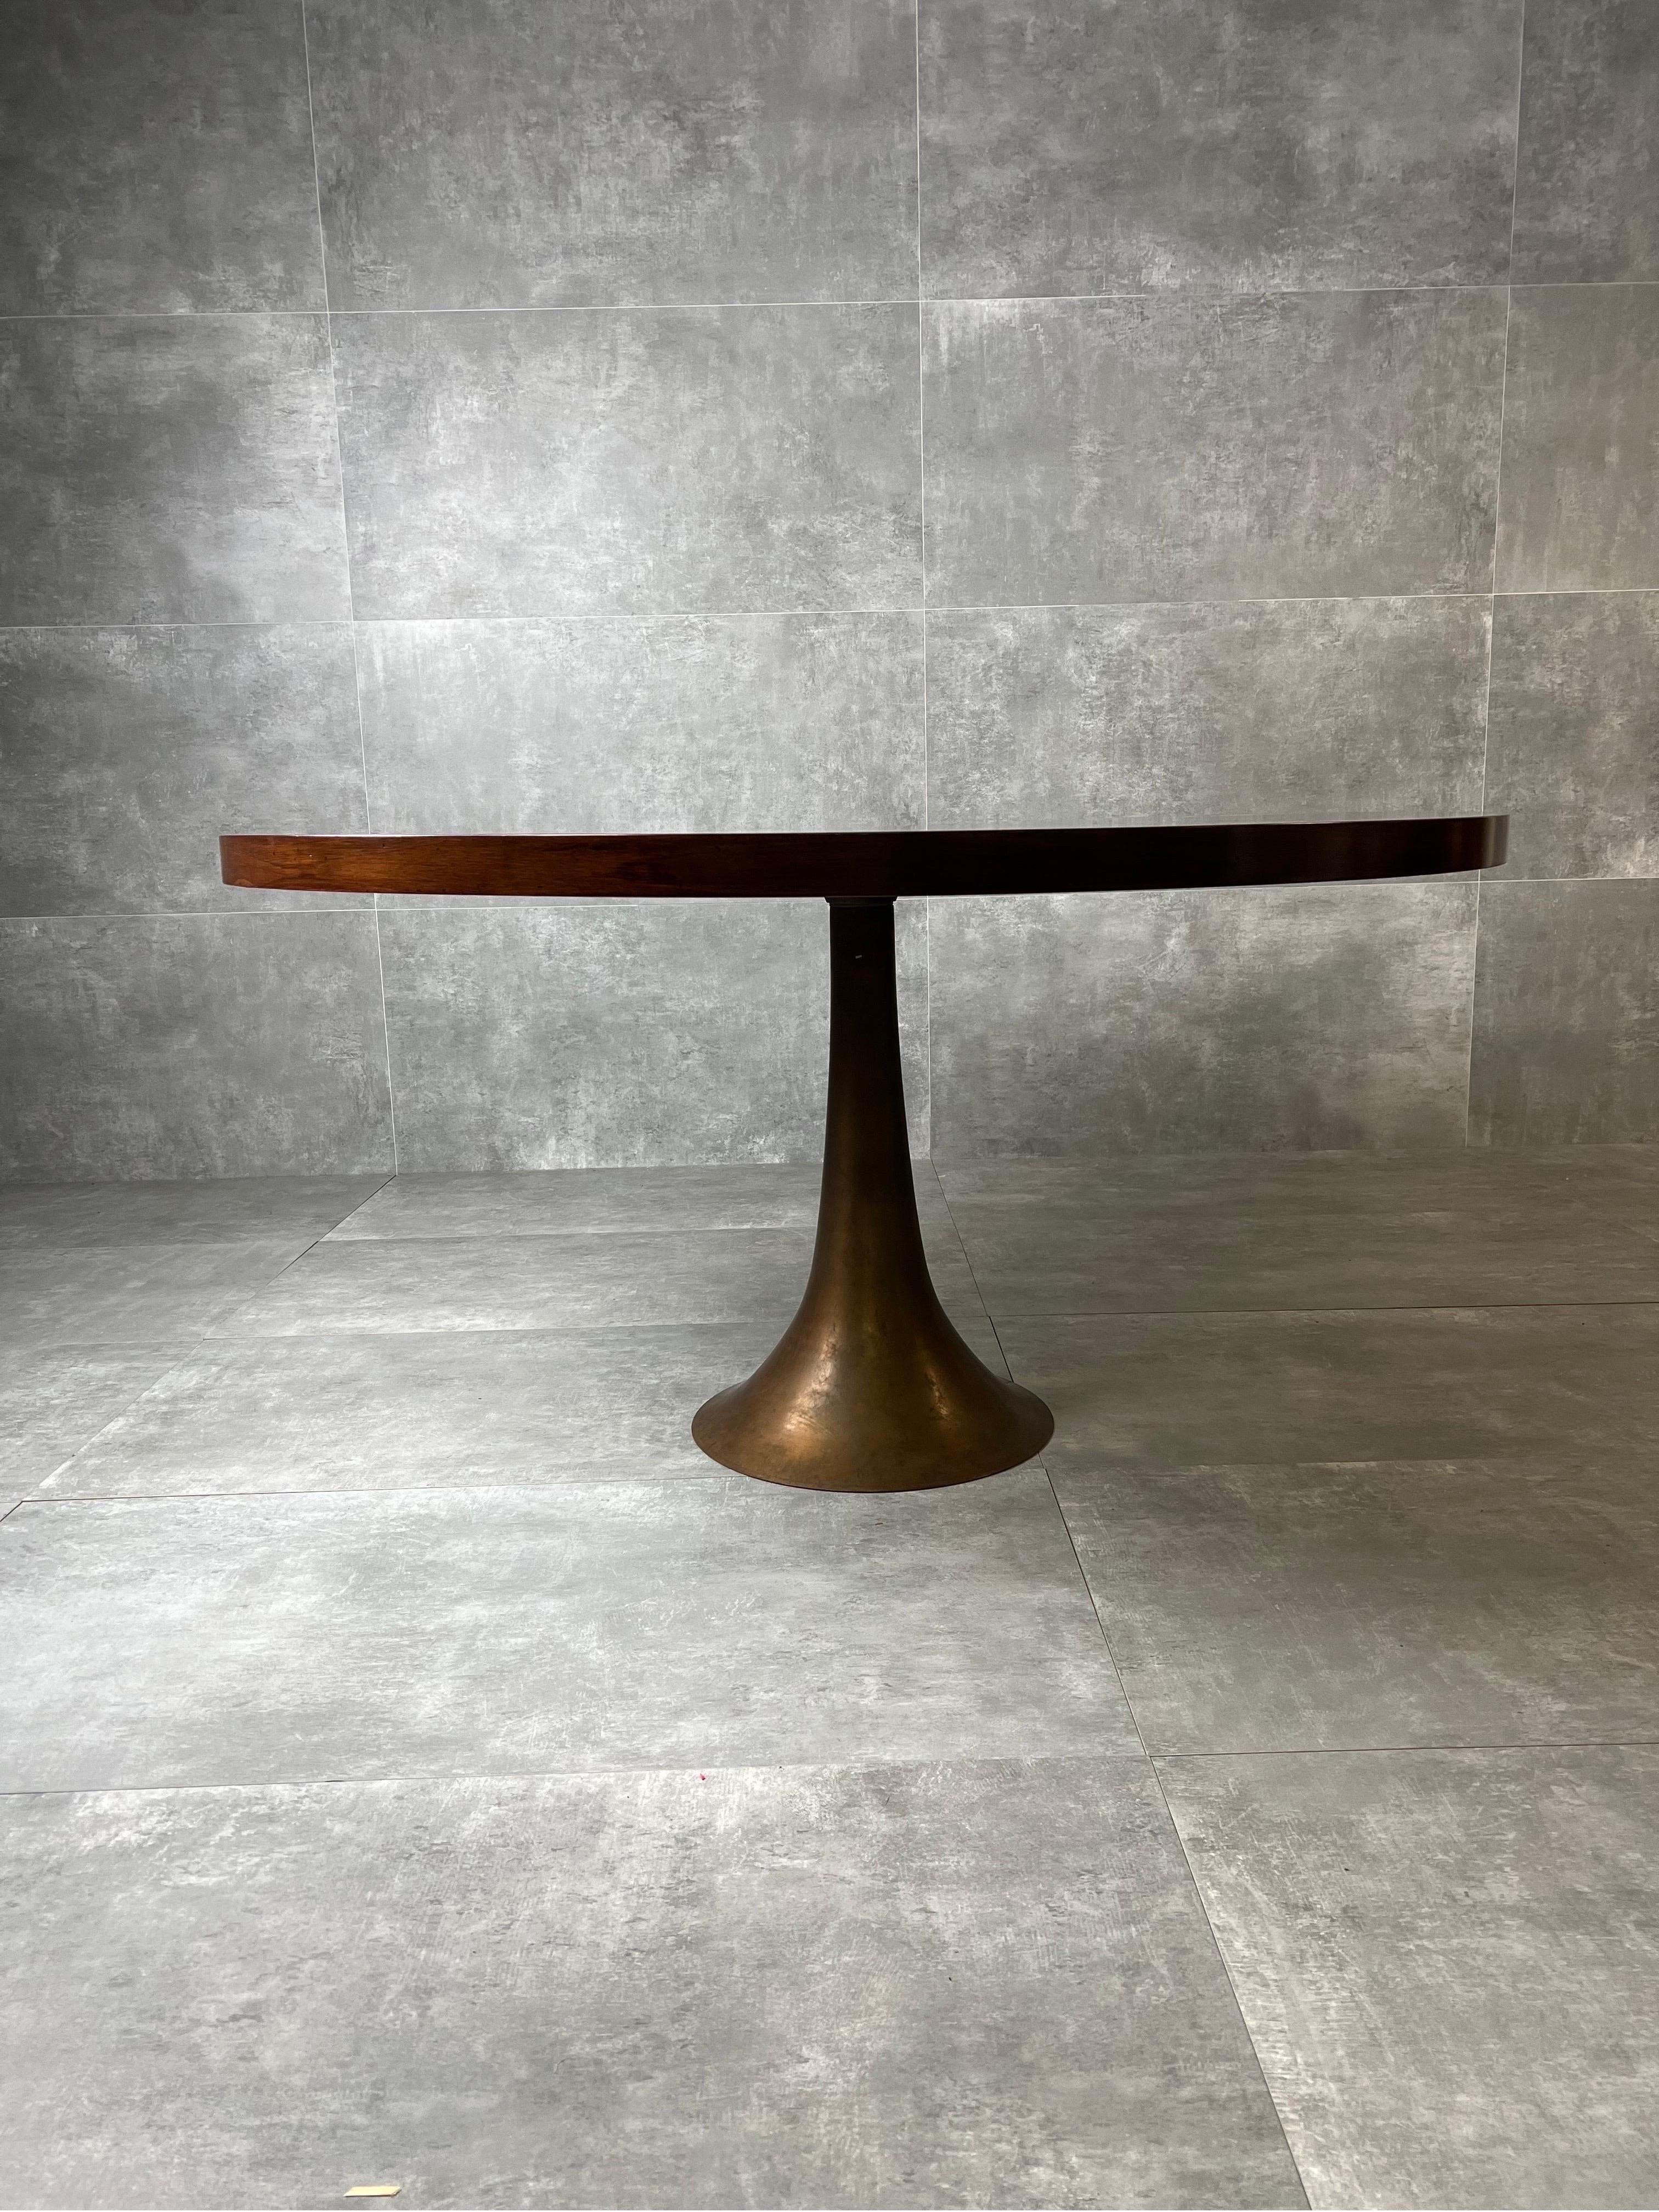 Tischmodell 302 aus Bronzeguss auf einer Drehbank und Holzboden, entworfen von Angelo Mangiarotti und hergestellt von Bernini im Jahr 1959.